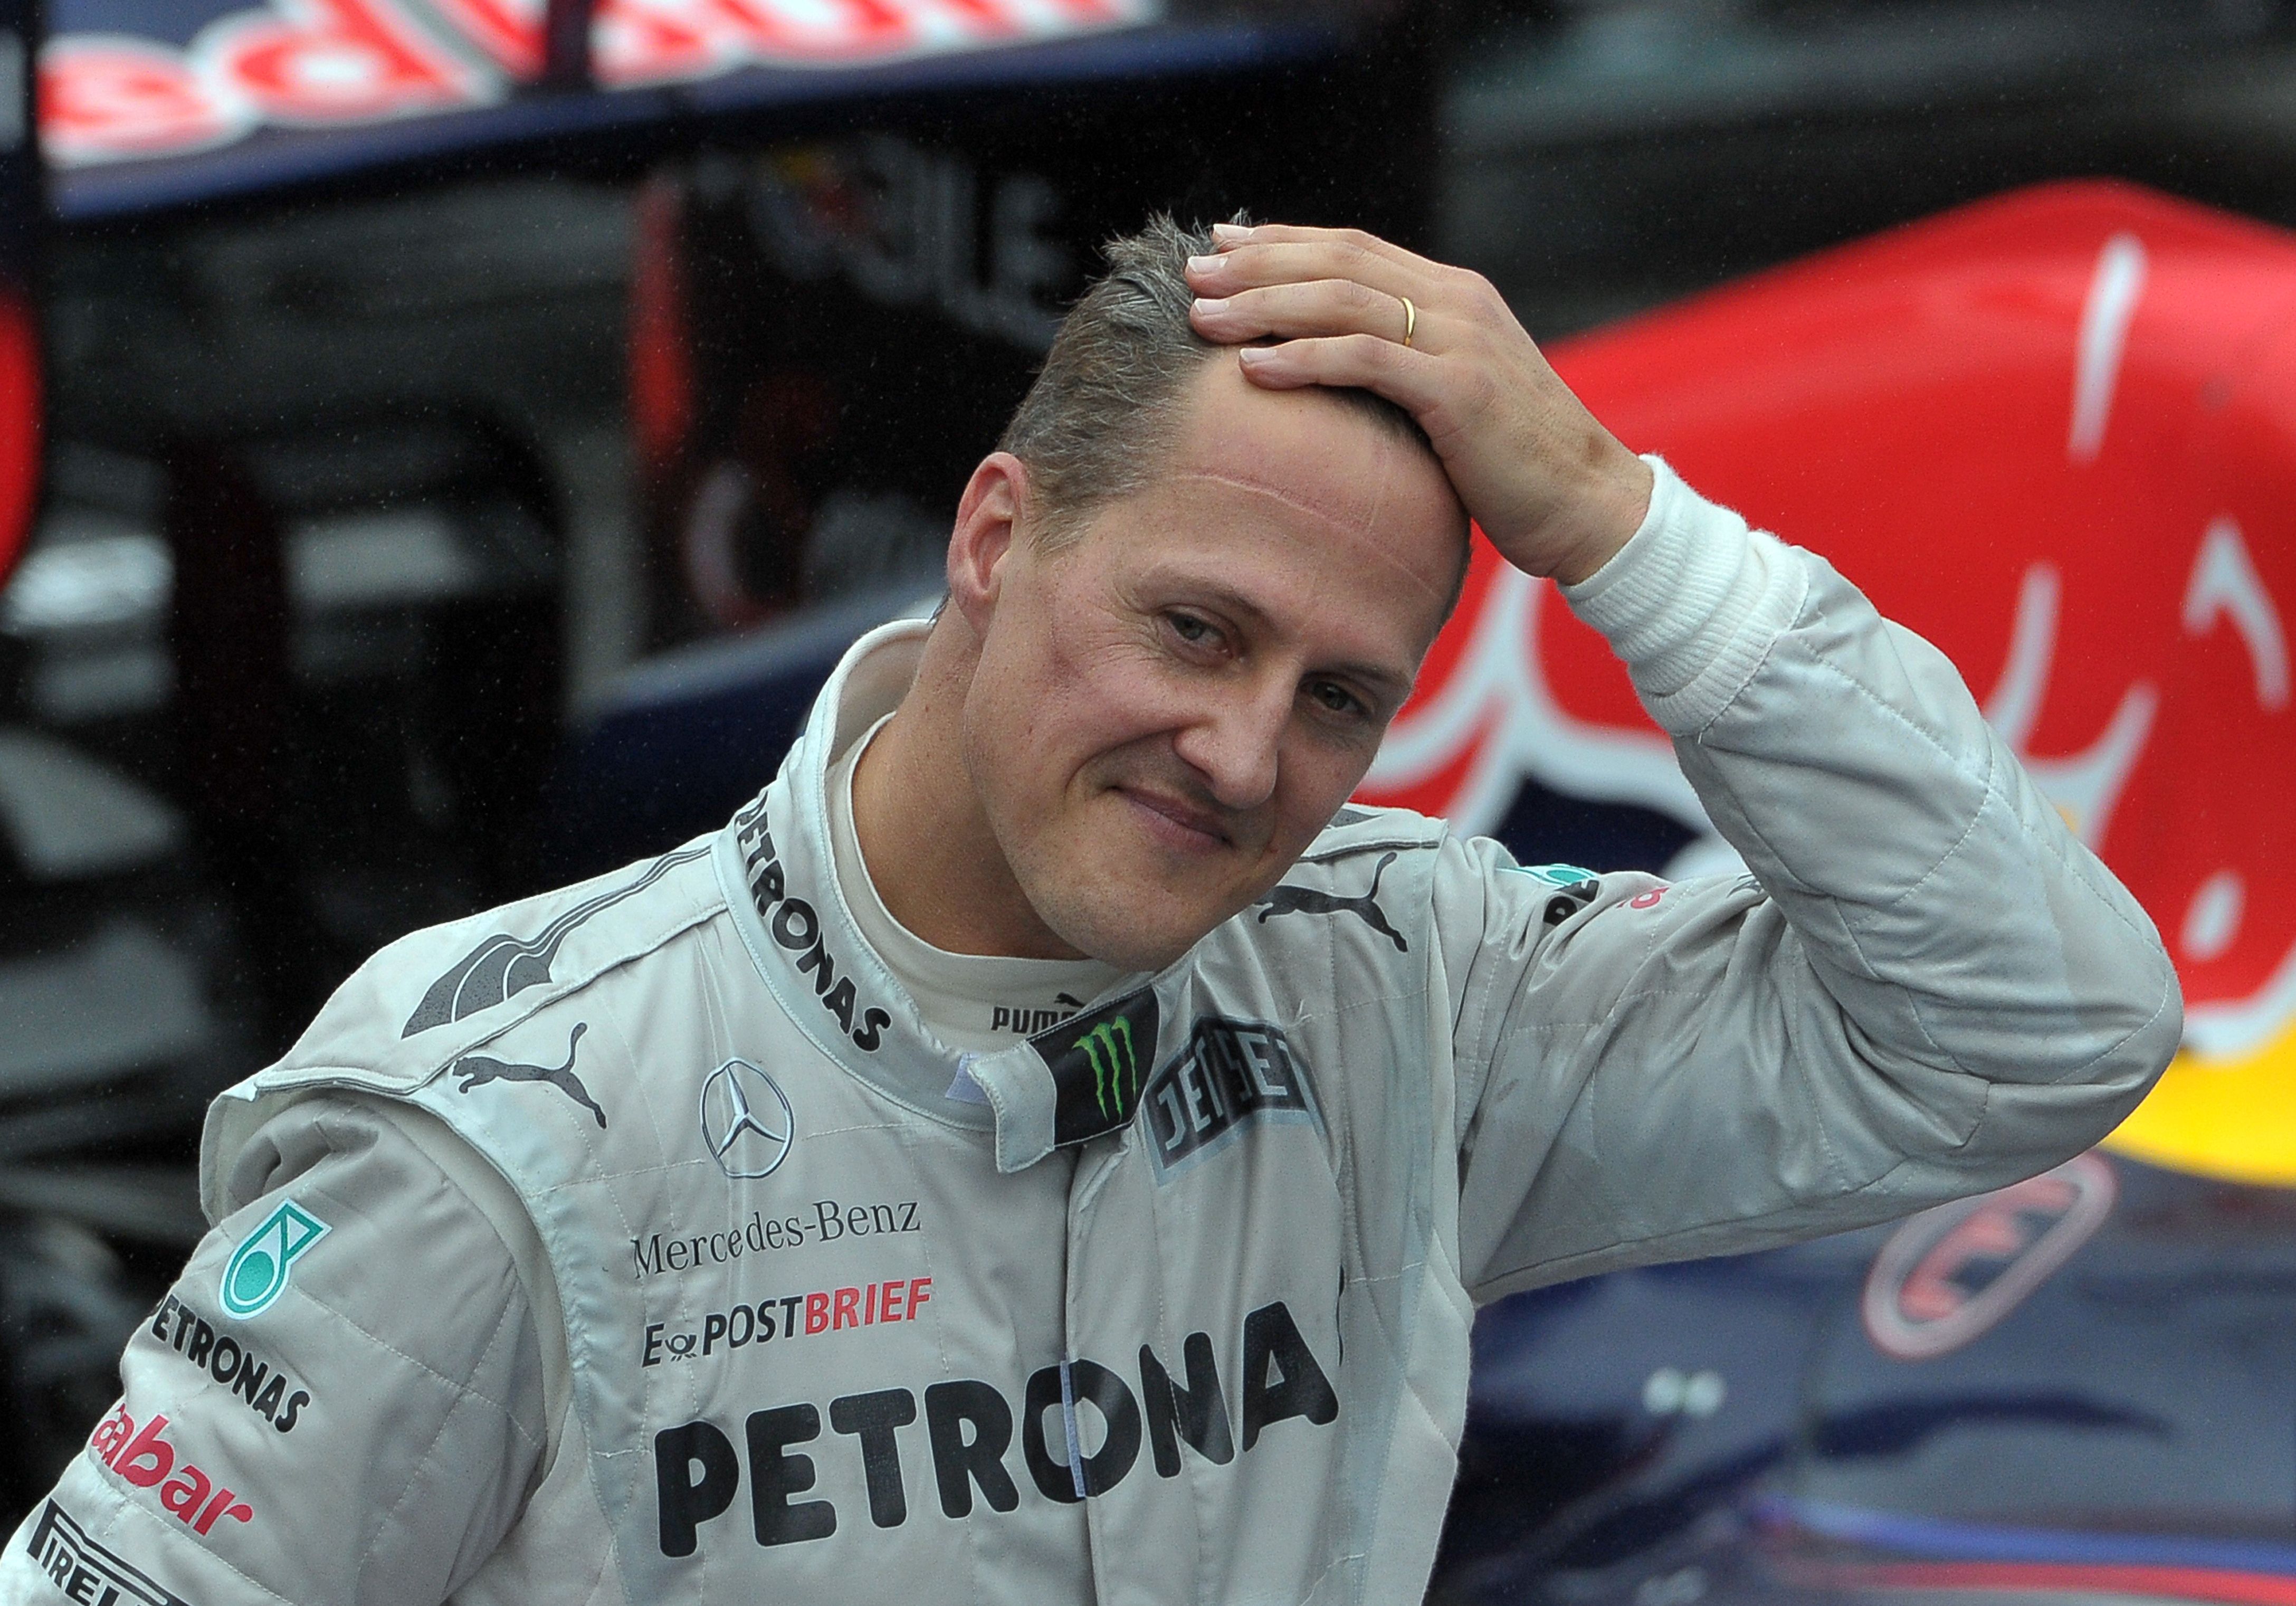 Formel-1-Legende Michael Schumacher wuchs in Kerpen-Manheim auf, bevor er siebenmaliger Weltmeister wurde